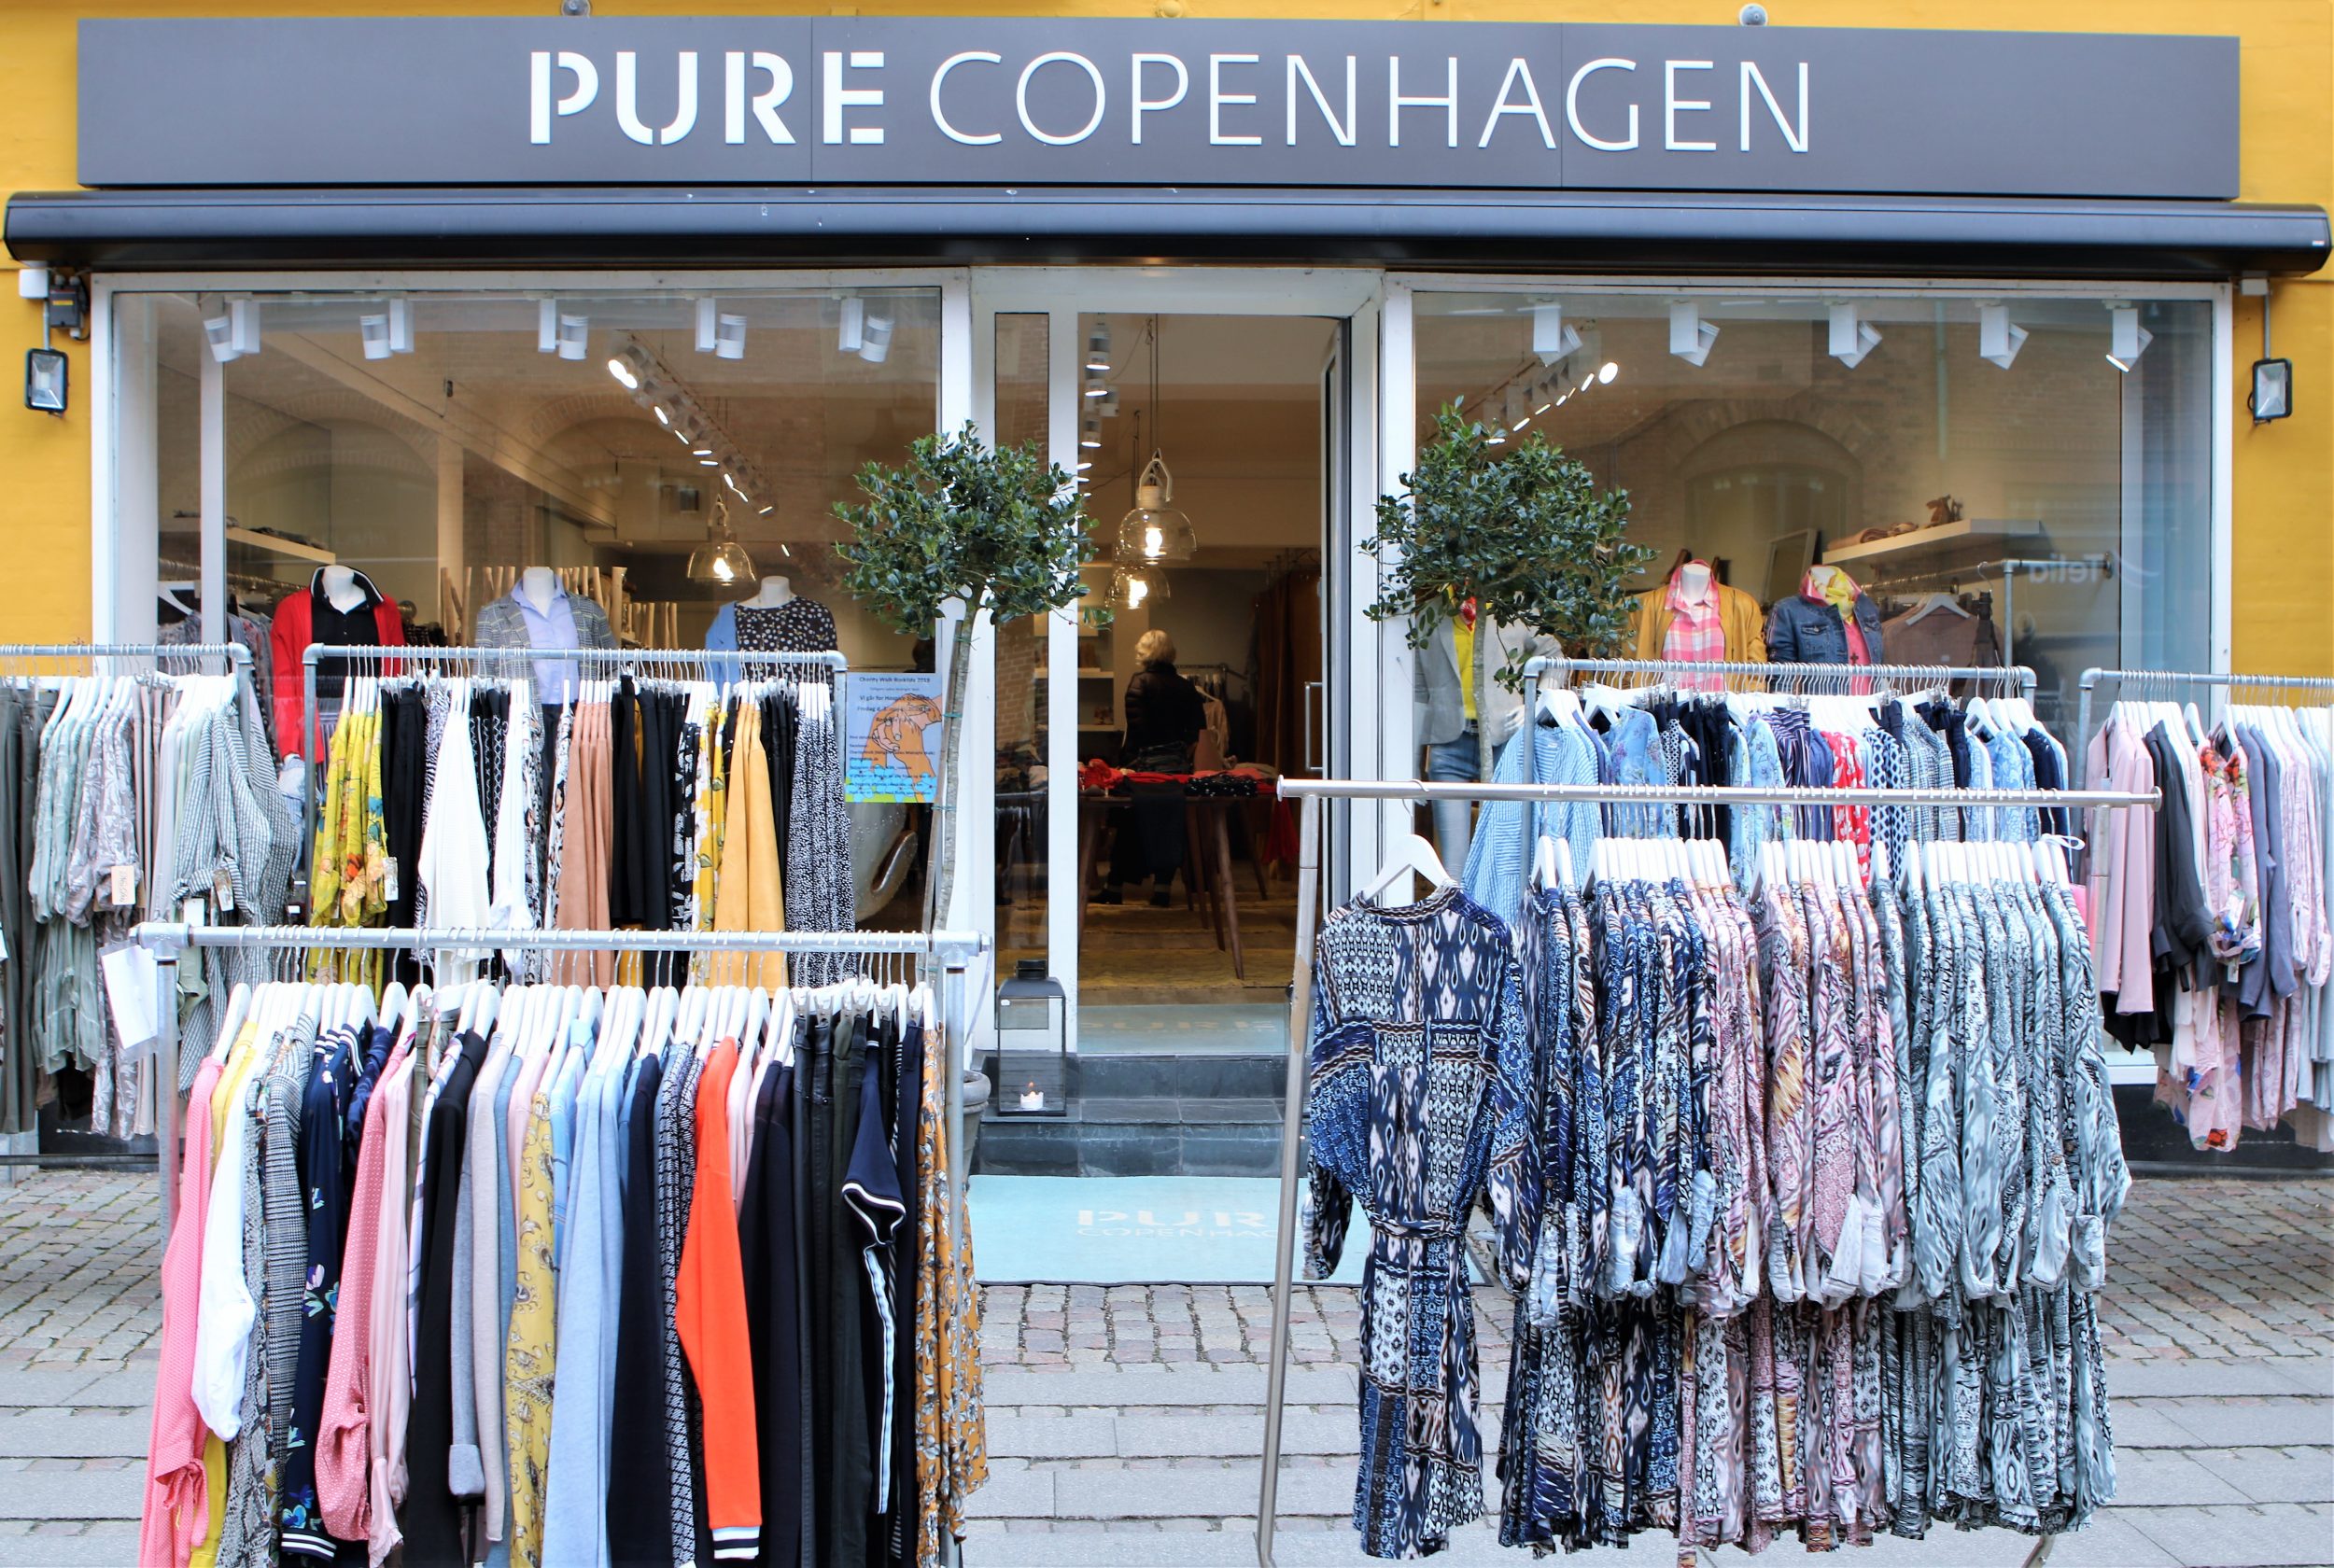 Bevise sejr evigt Pure Copenhagen - her kan alle kan være med | Dit Roskilde